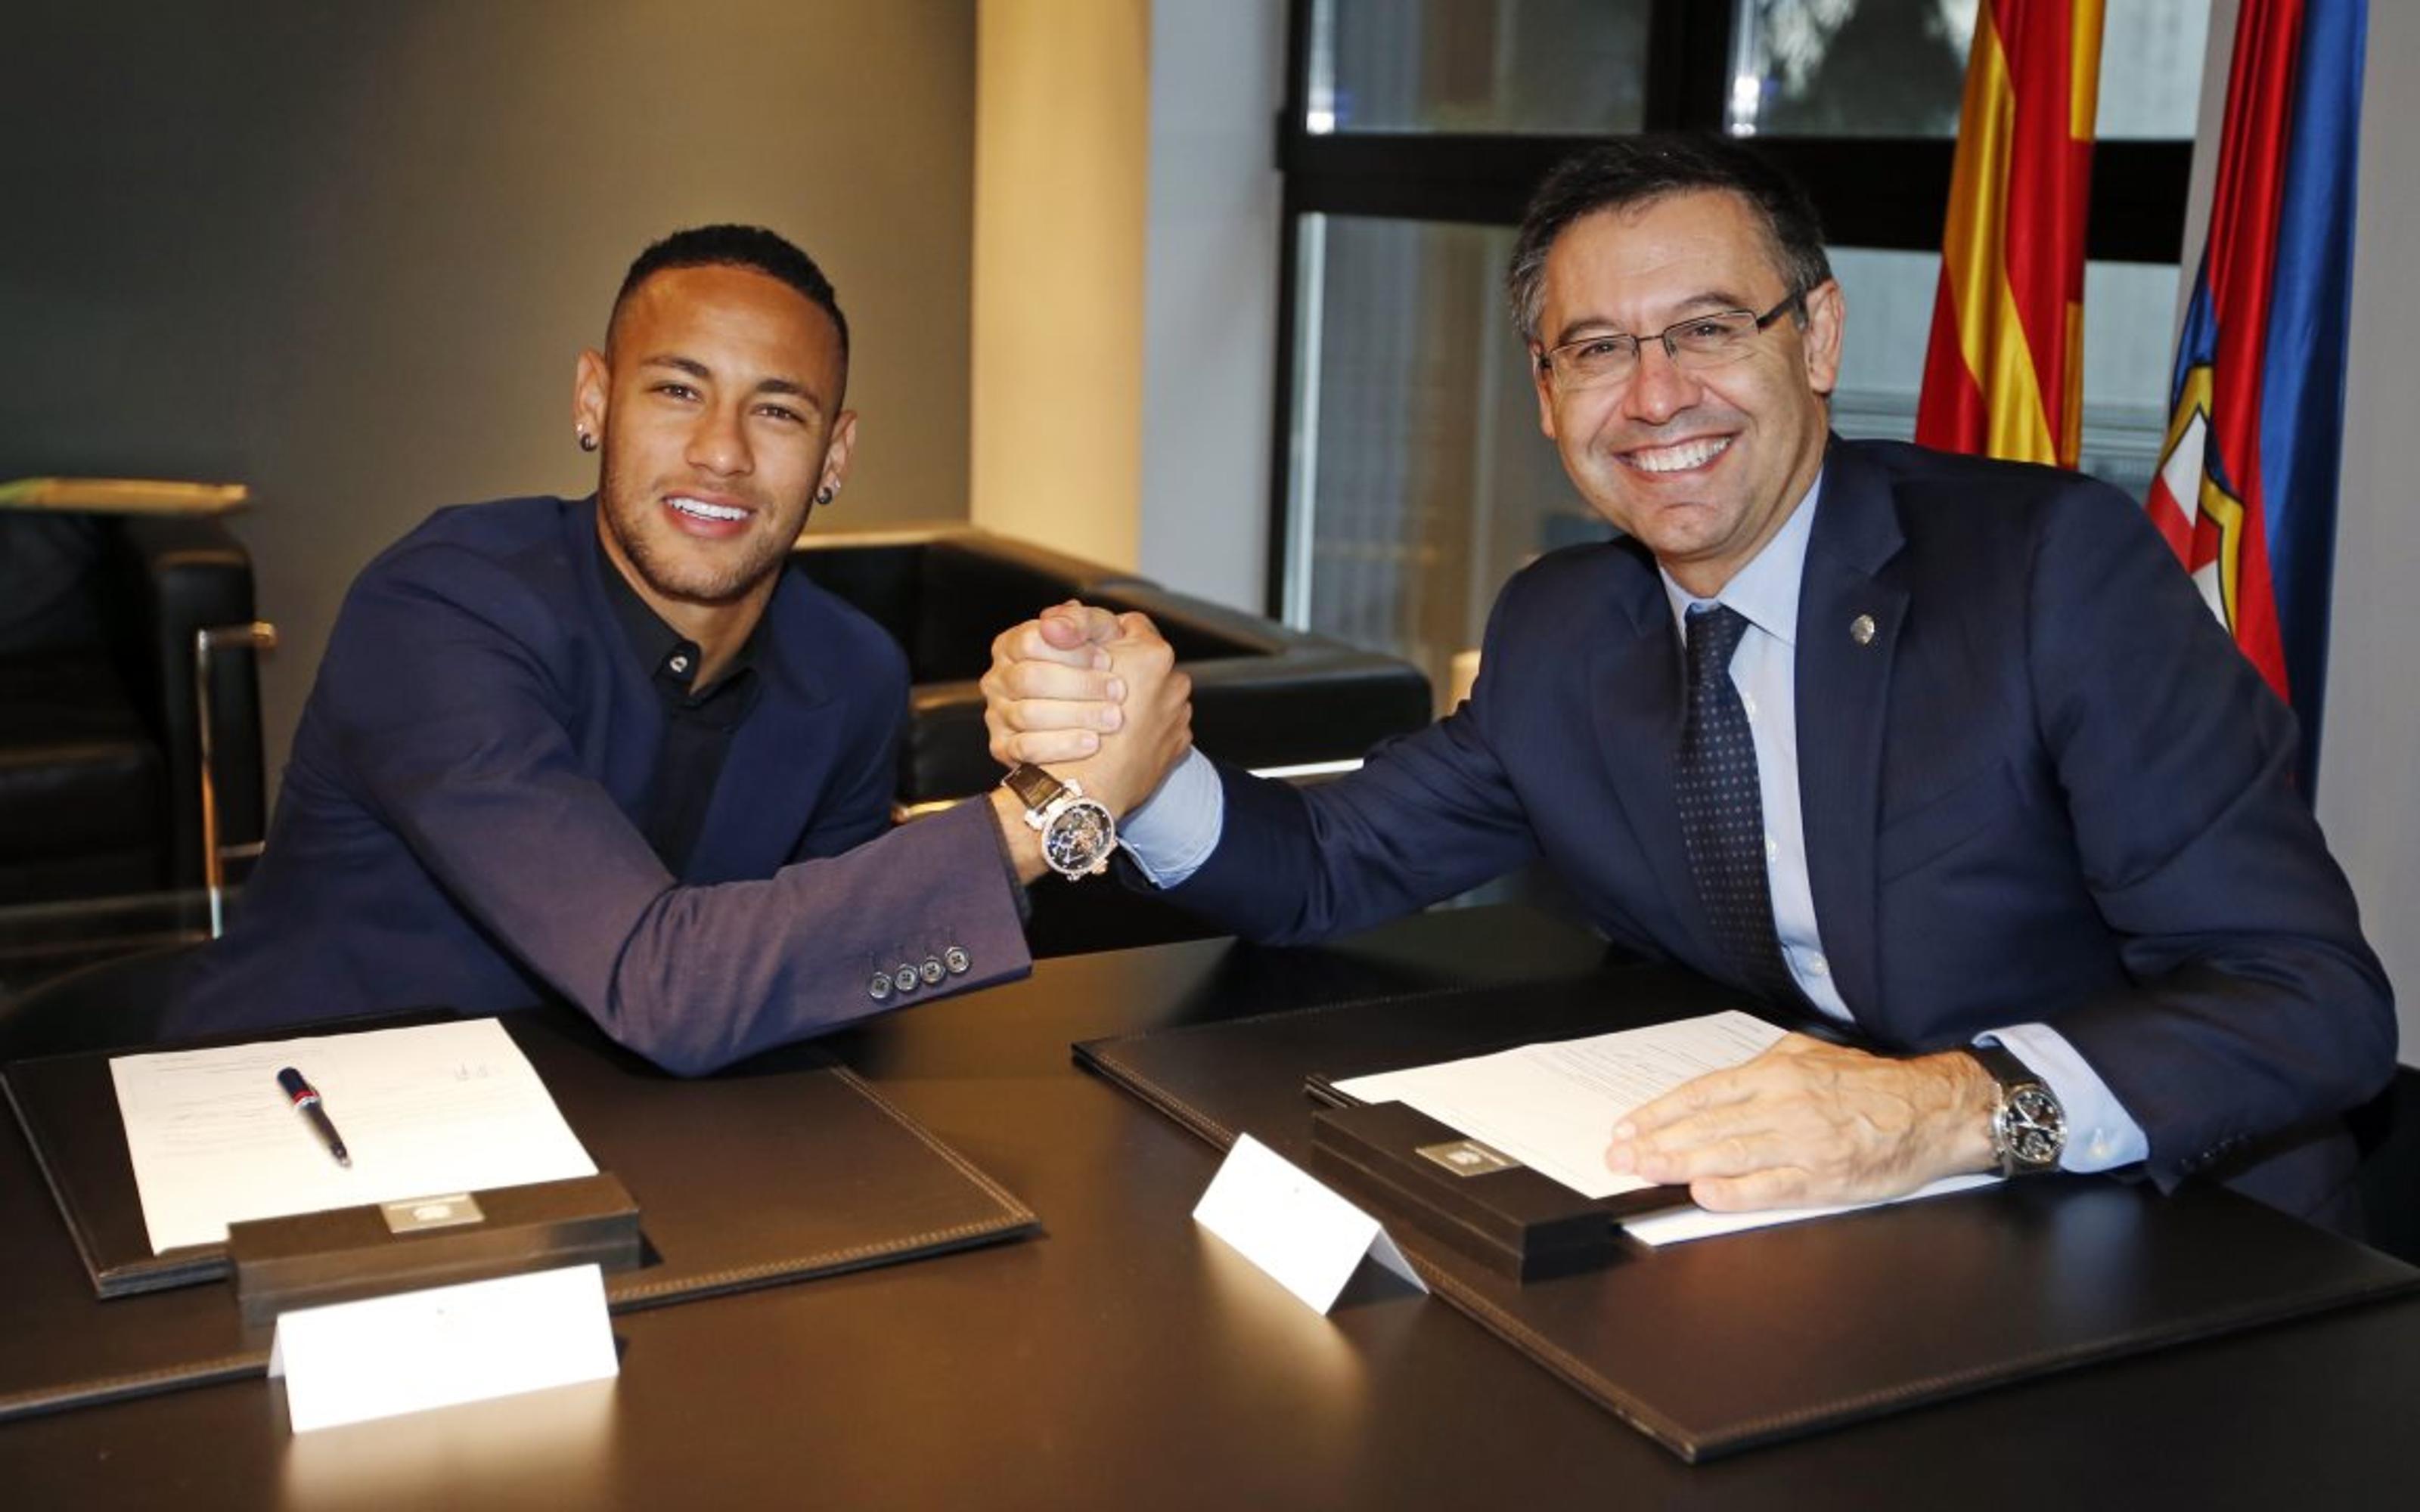 El Barça gana la batalla judicial a Neymar por el bonus de 43 millones de euros